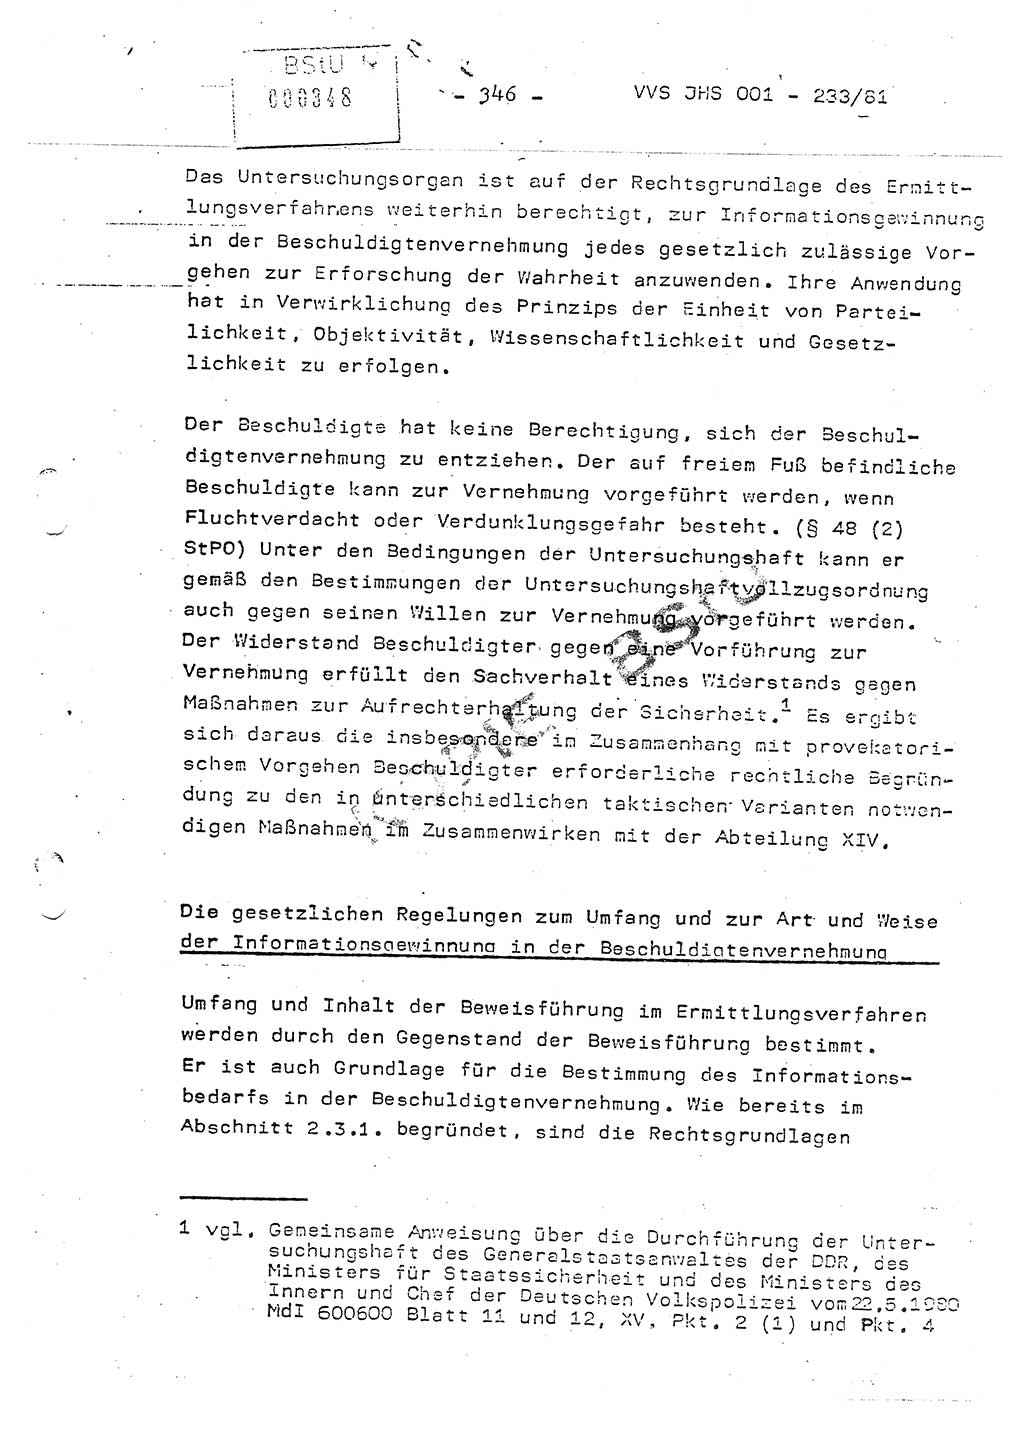 Dissertation Oberstleutnant Horst Zank (JHS), Oberstleutnant Dr. Karl-Heinz Knoblauch (JHS), Oberstleutnant Gustav-Adolf Kowalewski (HA Ⅸ), Oberstleutnant Wolfgang Plötner (HA Ⅸ), Ministerium für Staatssicherheit (MfS) [Deutsche Demokratische Republik (DDR)], Juristische Hochschule (JHS), Vertrauliche Verschlußsache (VVS) o001-233/81, Potsdam 1981, Blatt 346 (Diss. MfS DDR JHS VVS o001-233/81 1981, Bl. 346)